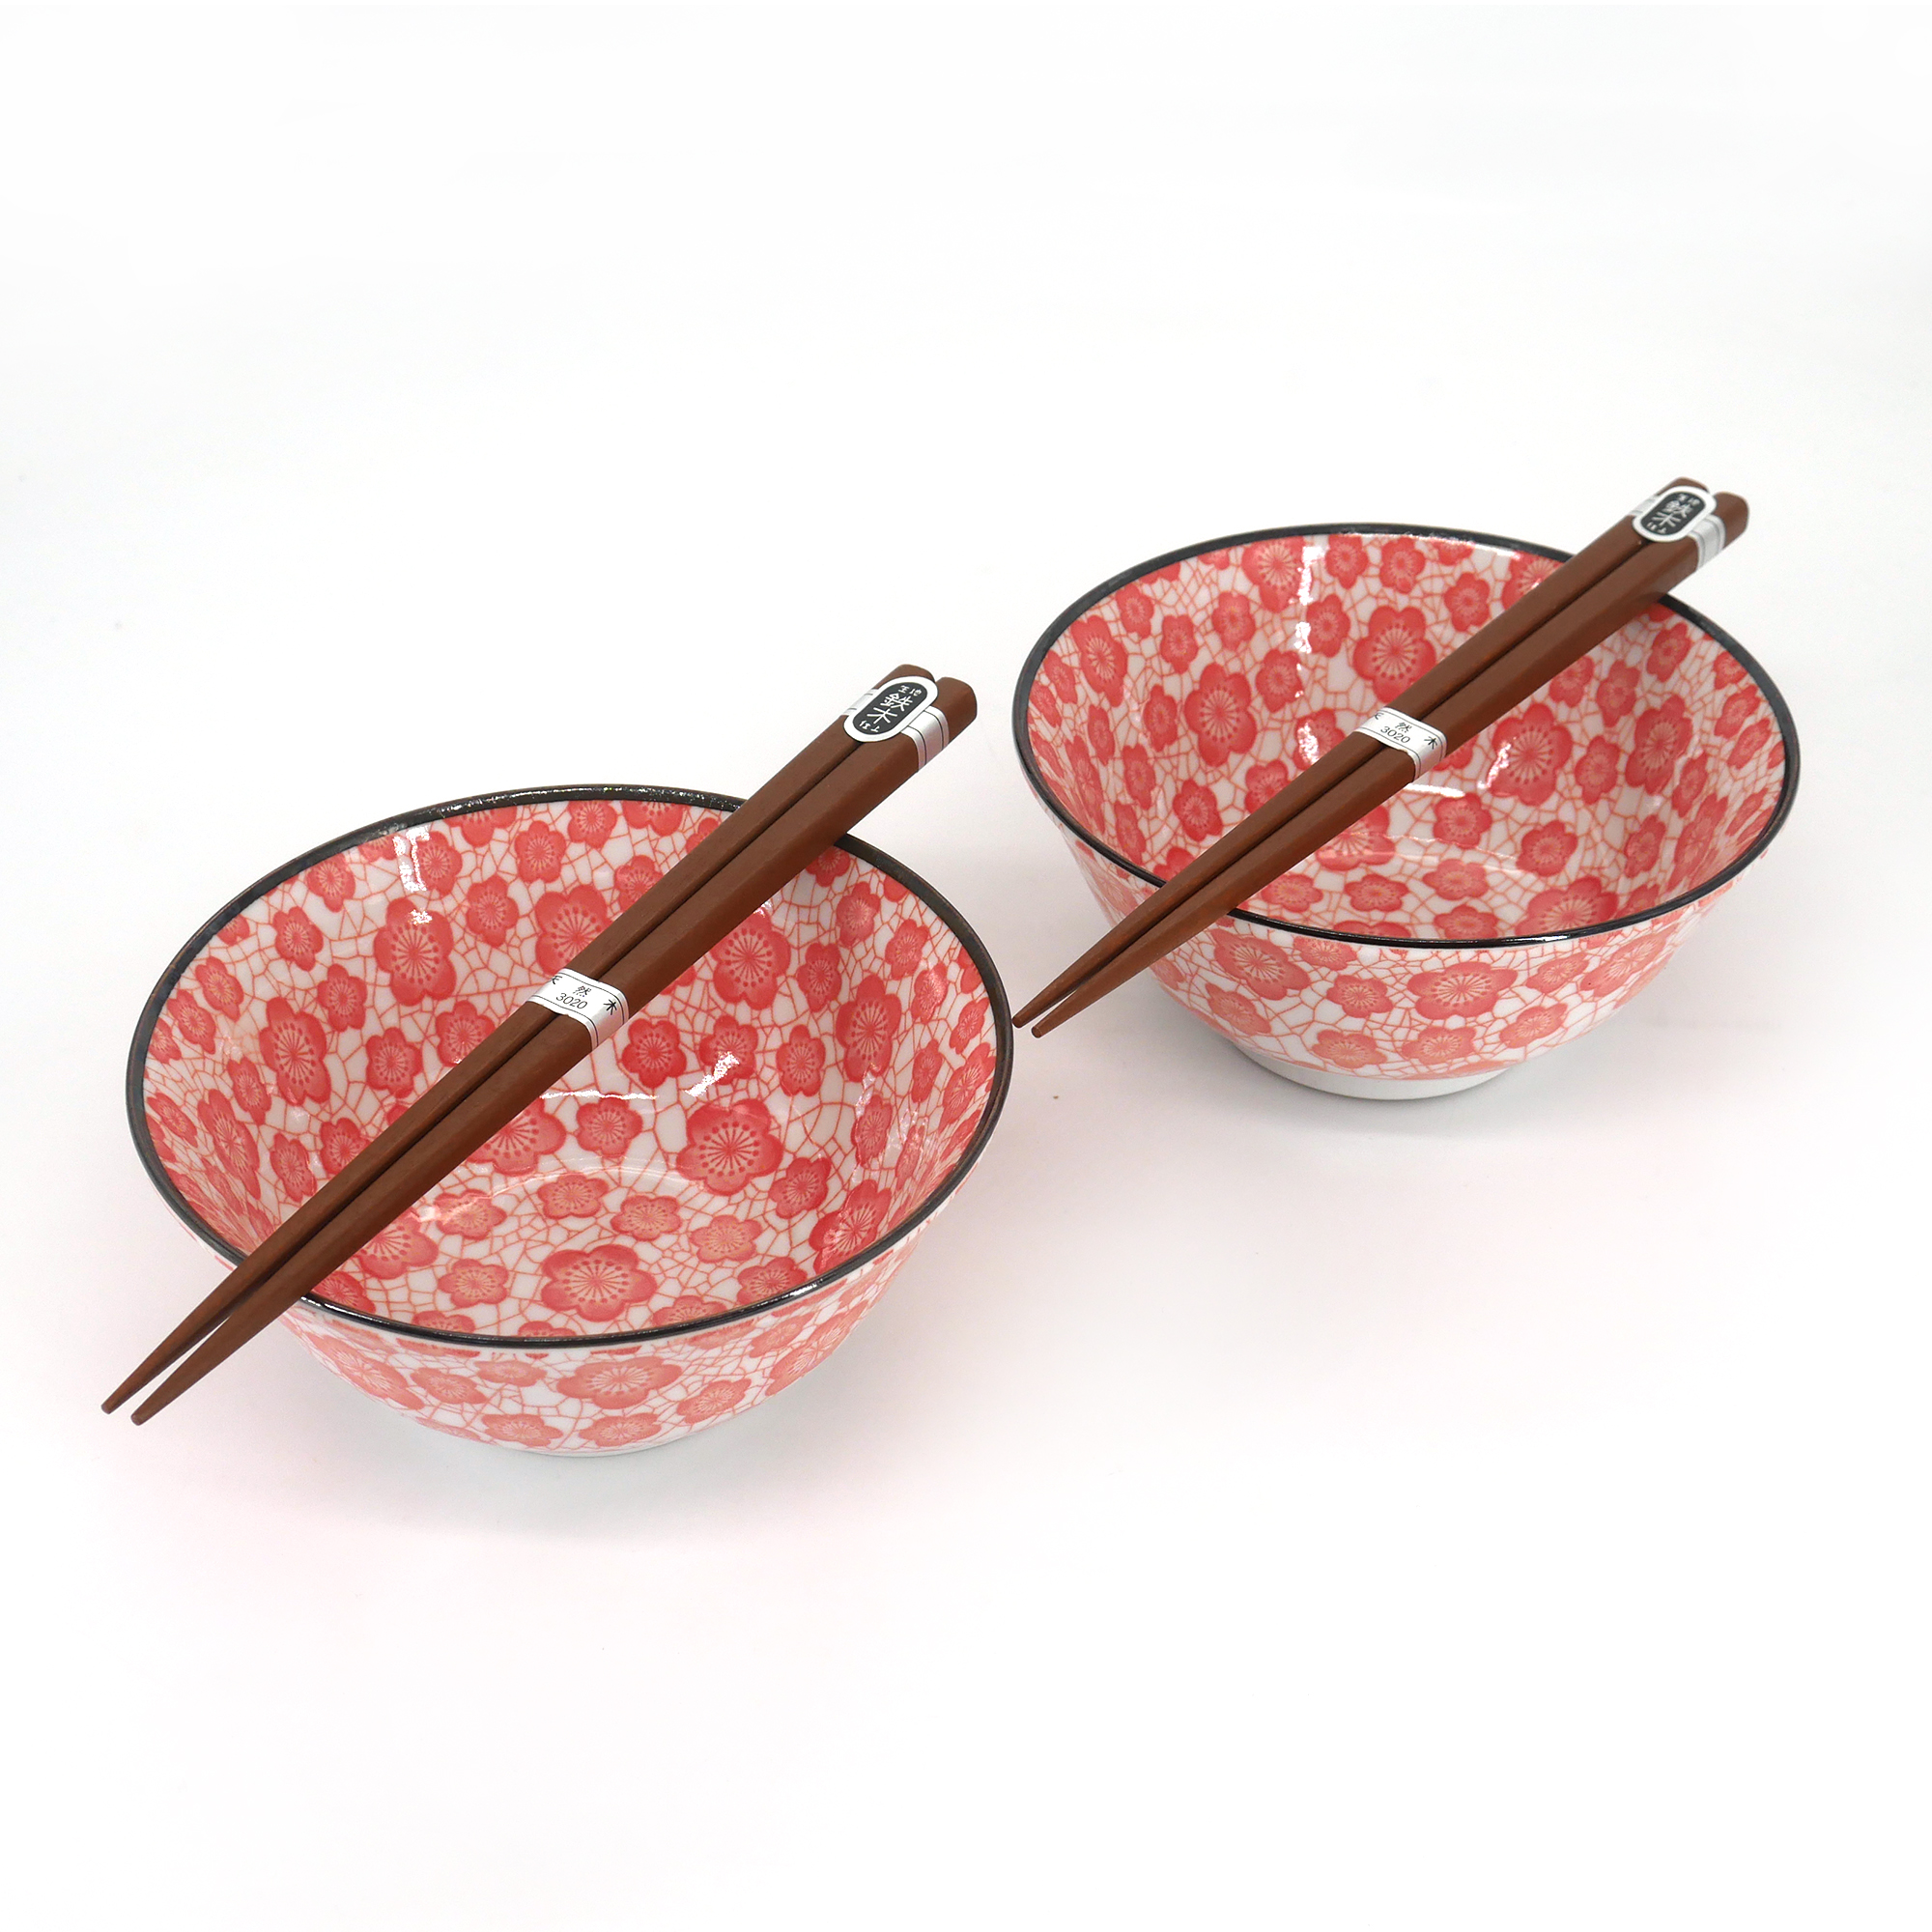 Bol à ramen japonais en céramique, blanc et rose, SAKURA